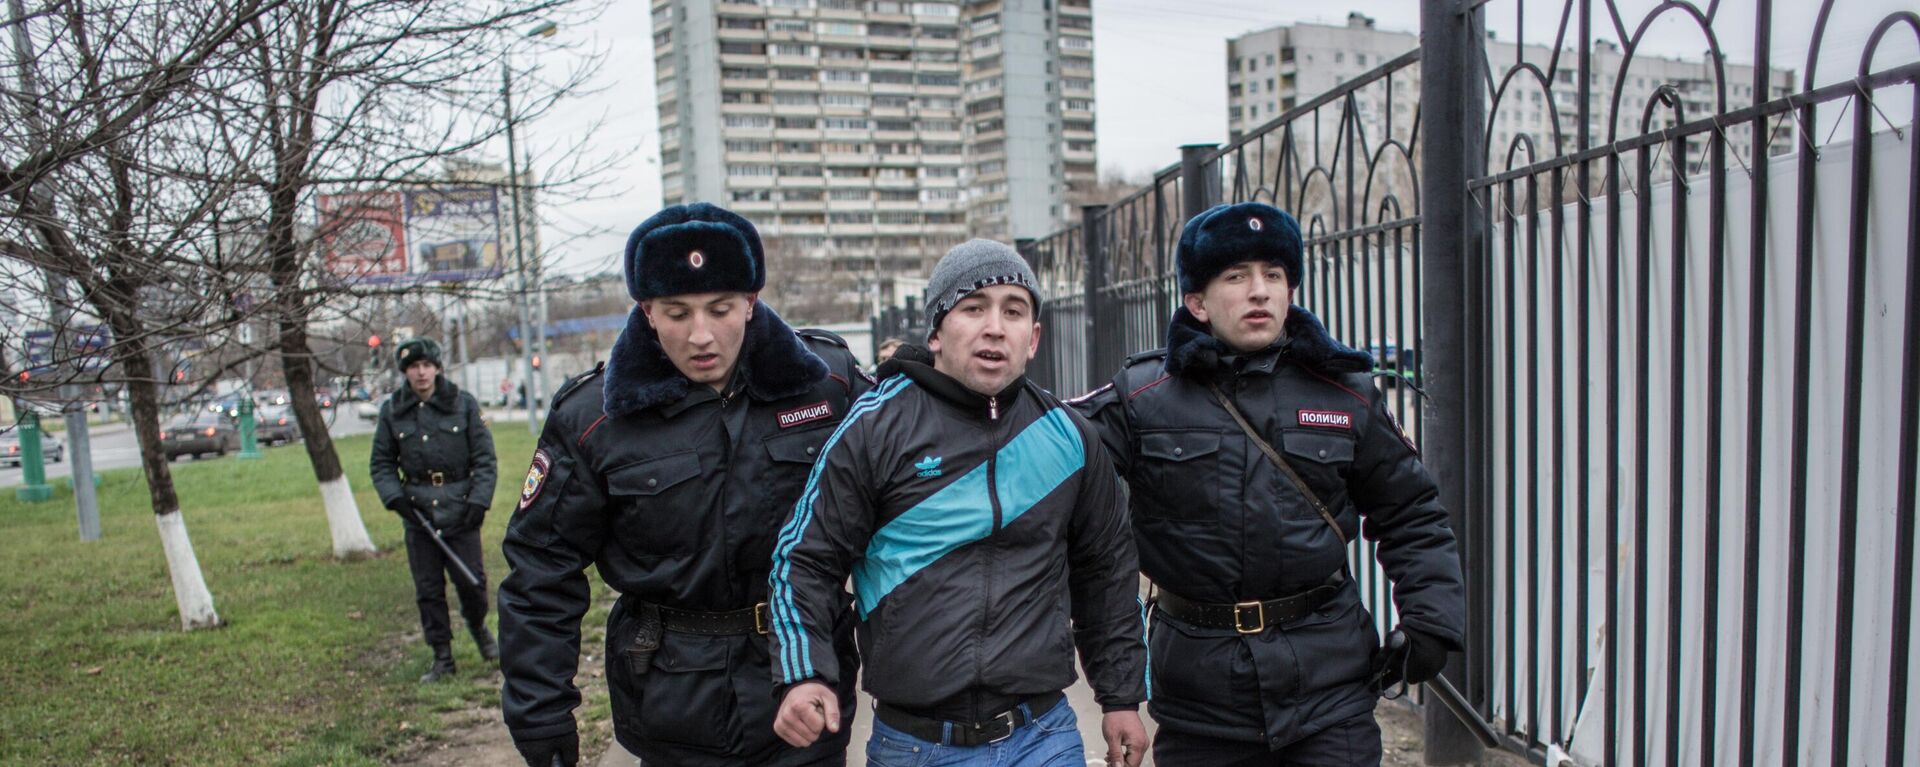 Полиция проводит проверку миграционного законодательства в ТЦ Москва - Sputnik Таджикистан, 1920, 15.02.2021